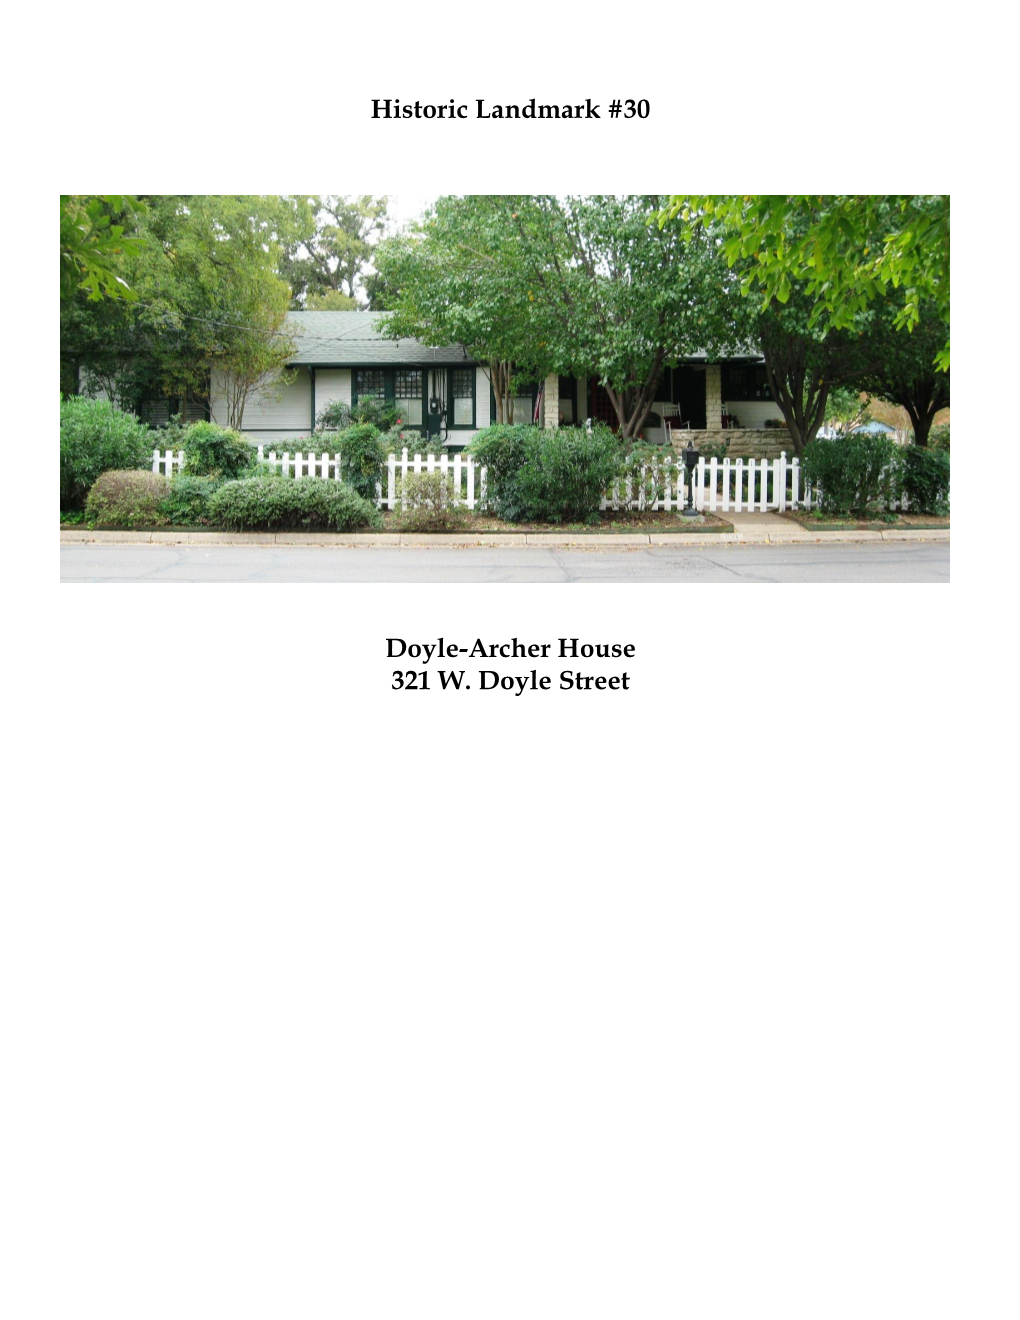 Doyle-Archer House, 321 W. Doyle